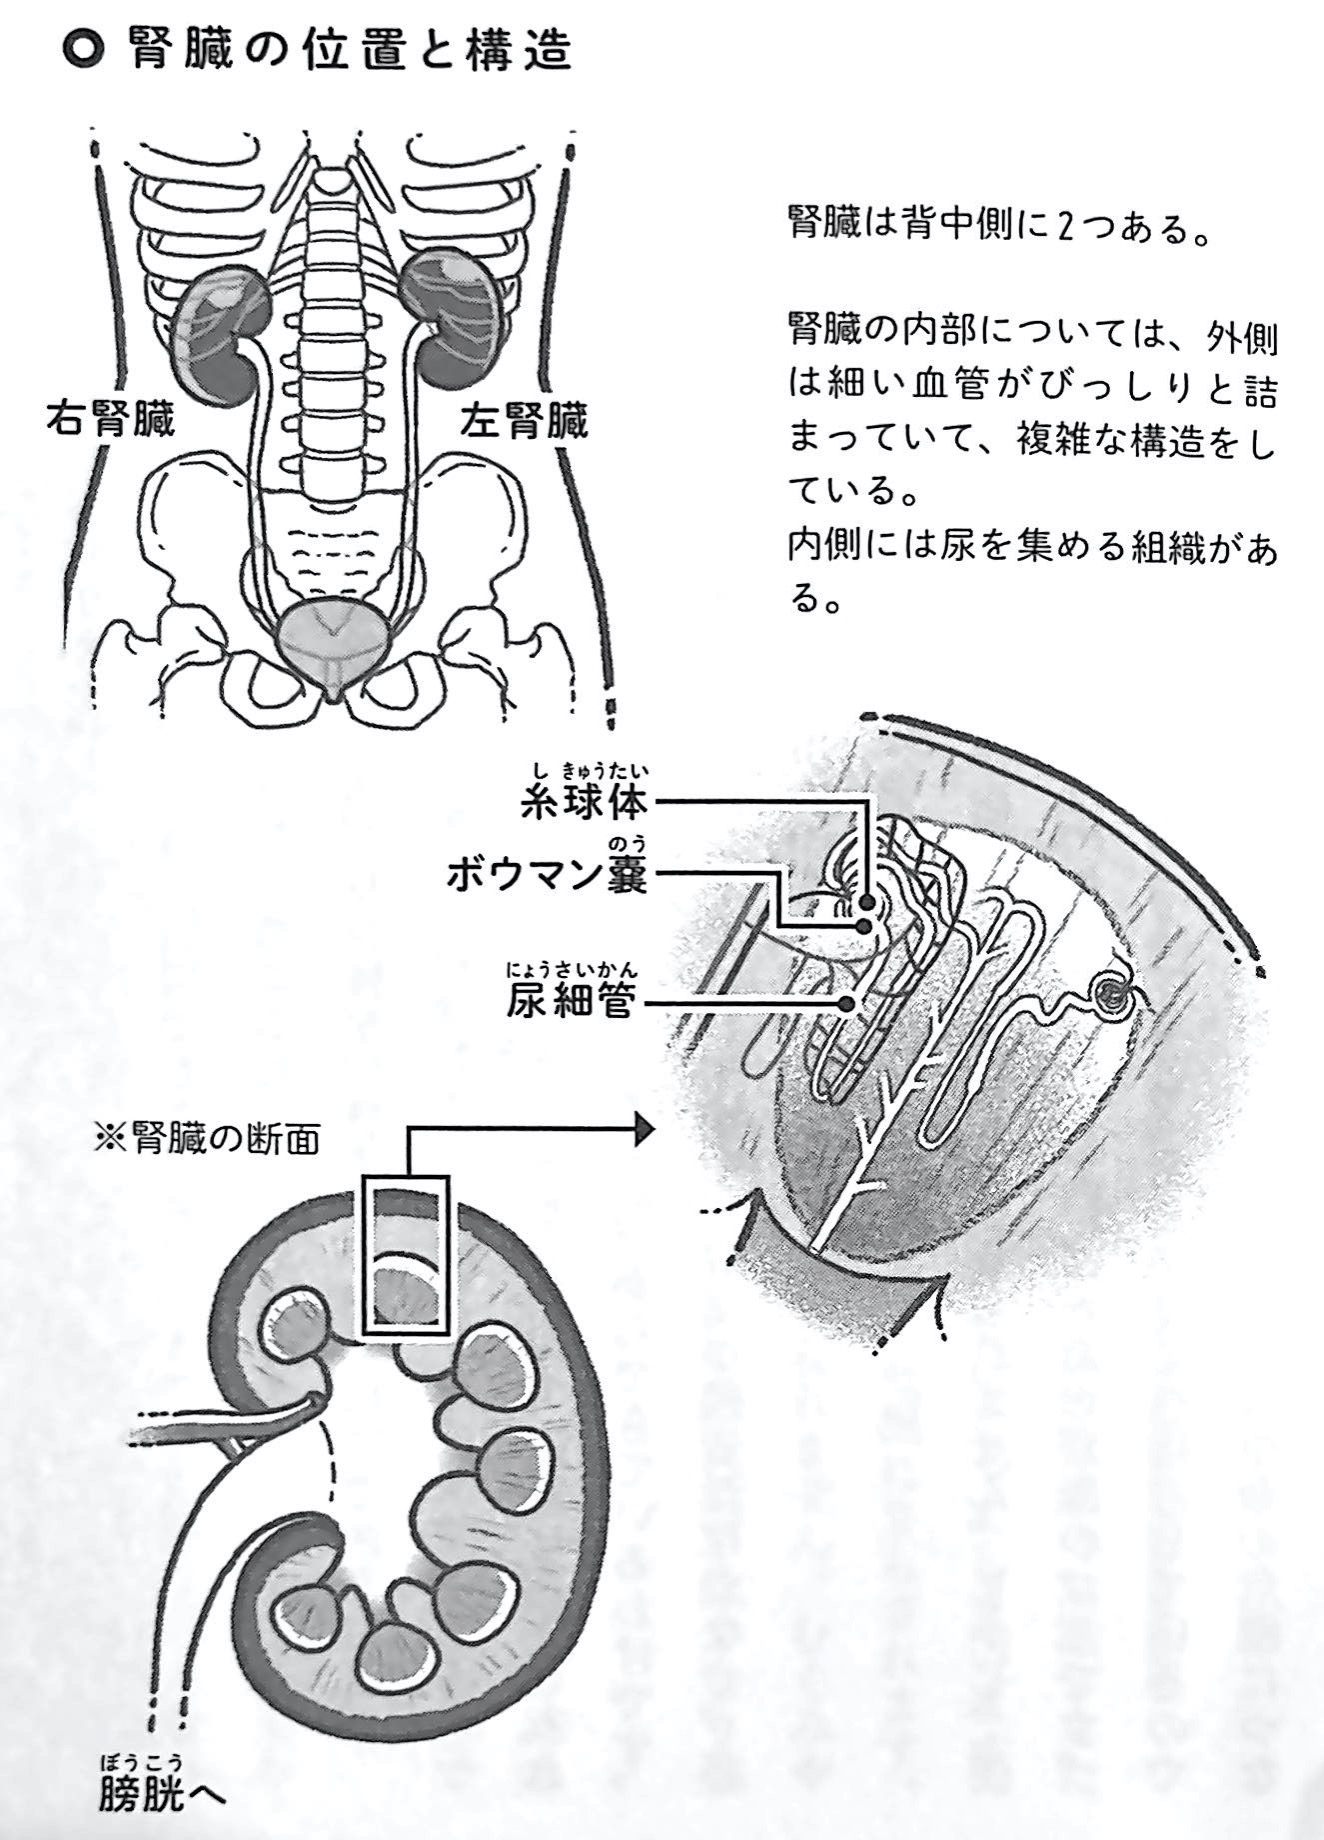 図1 腎臓の位置と構造 人は腎臓から老いていく 第1章